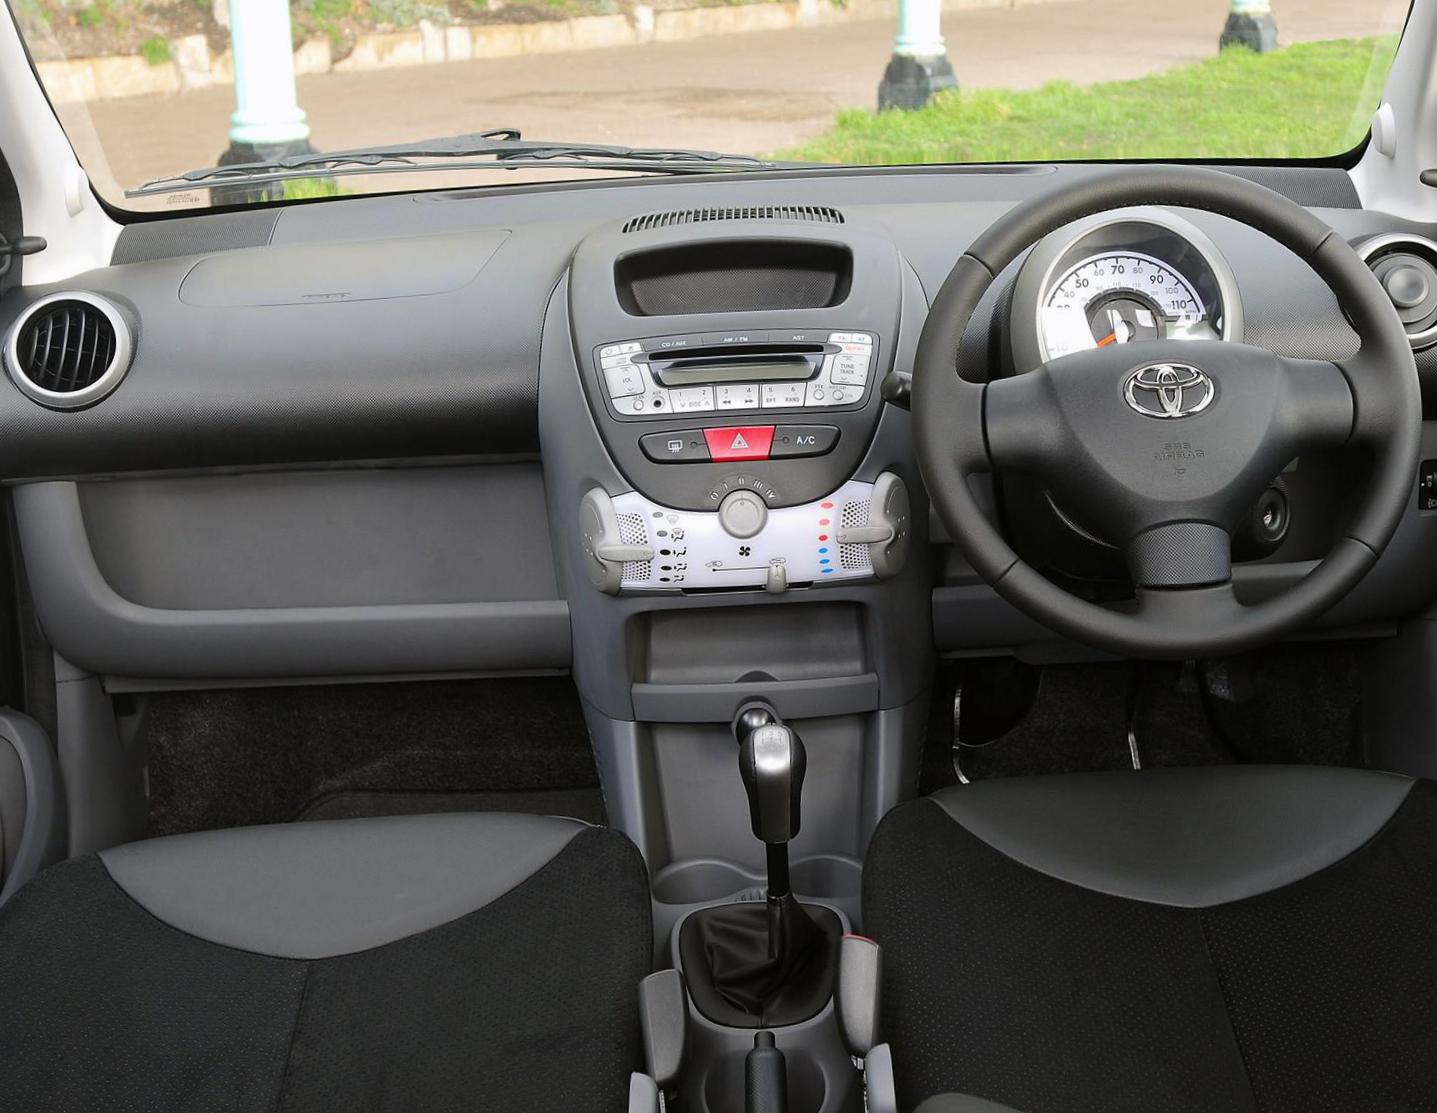 Toyota Aygo model suv